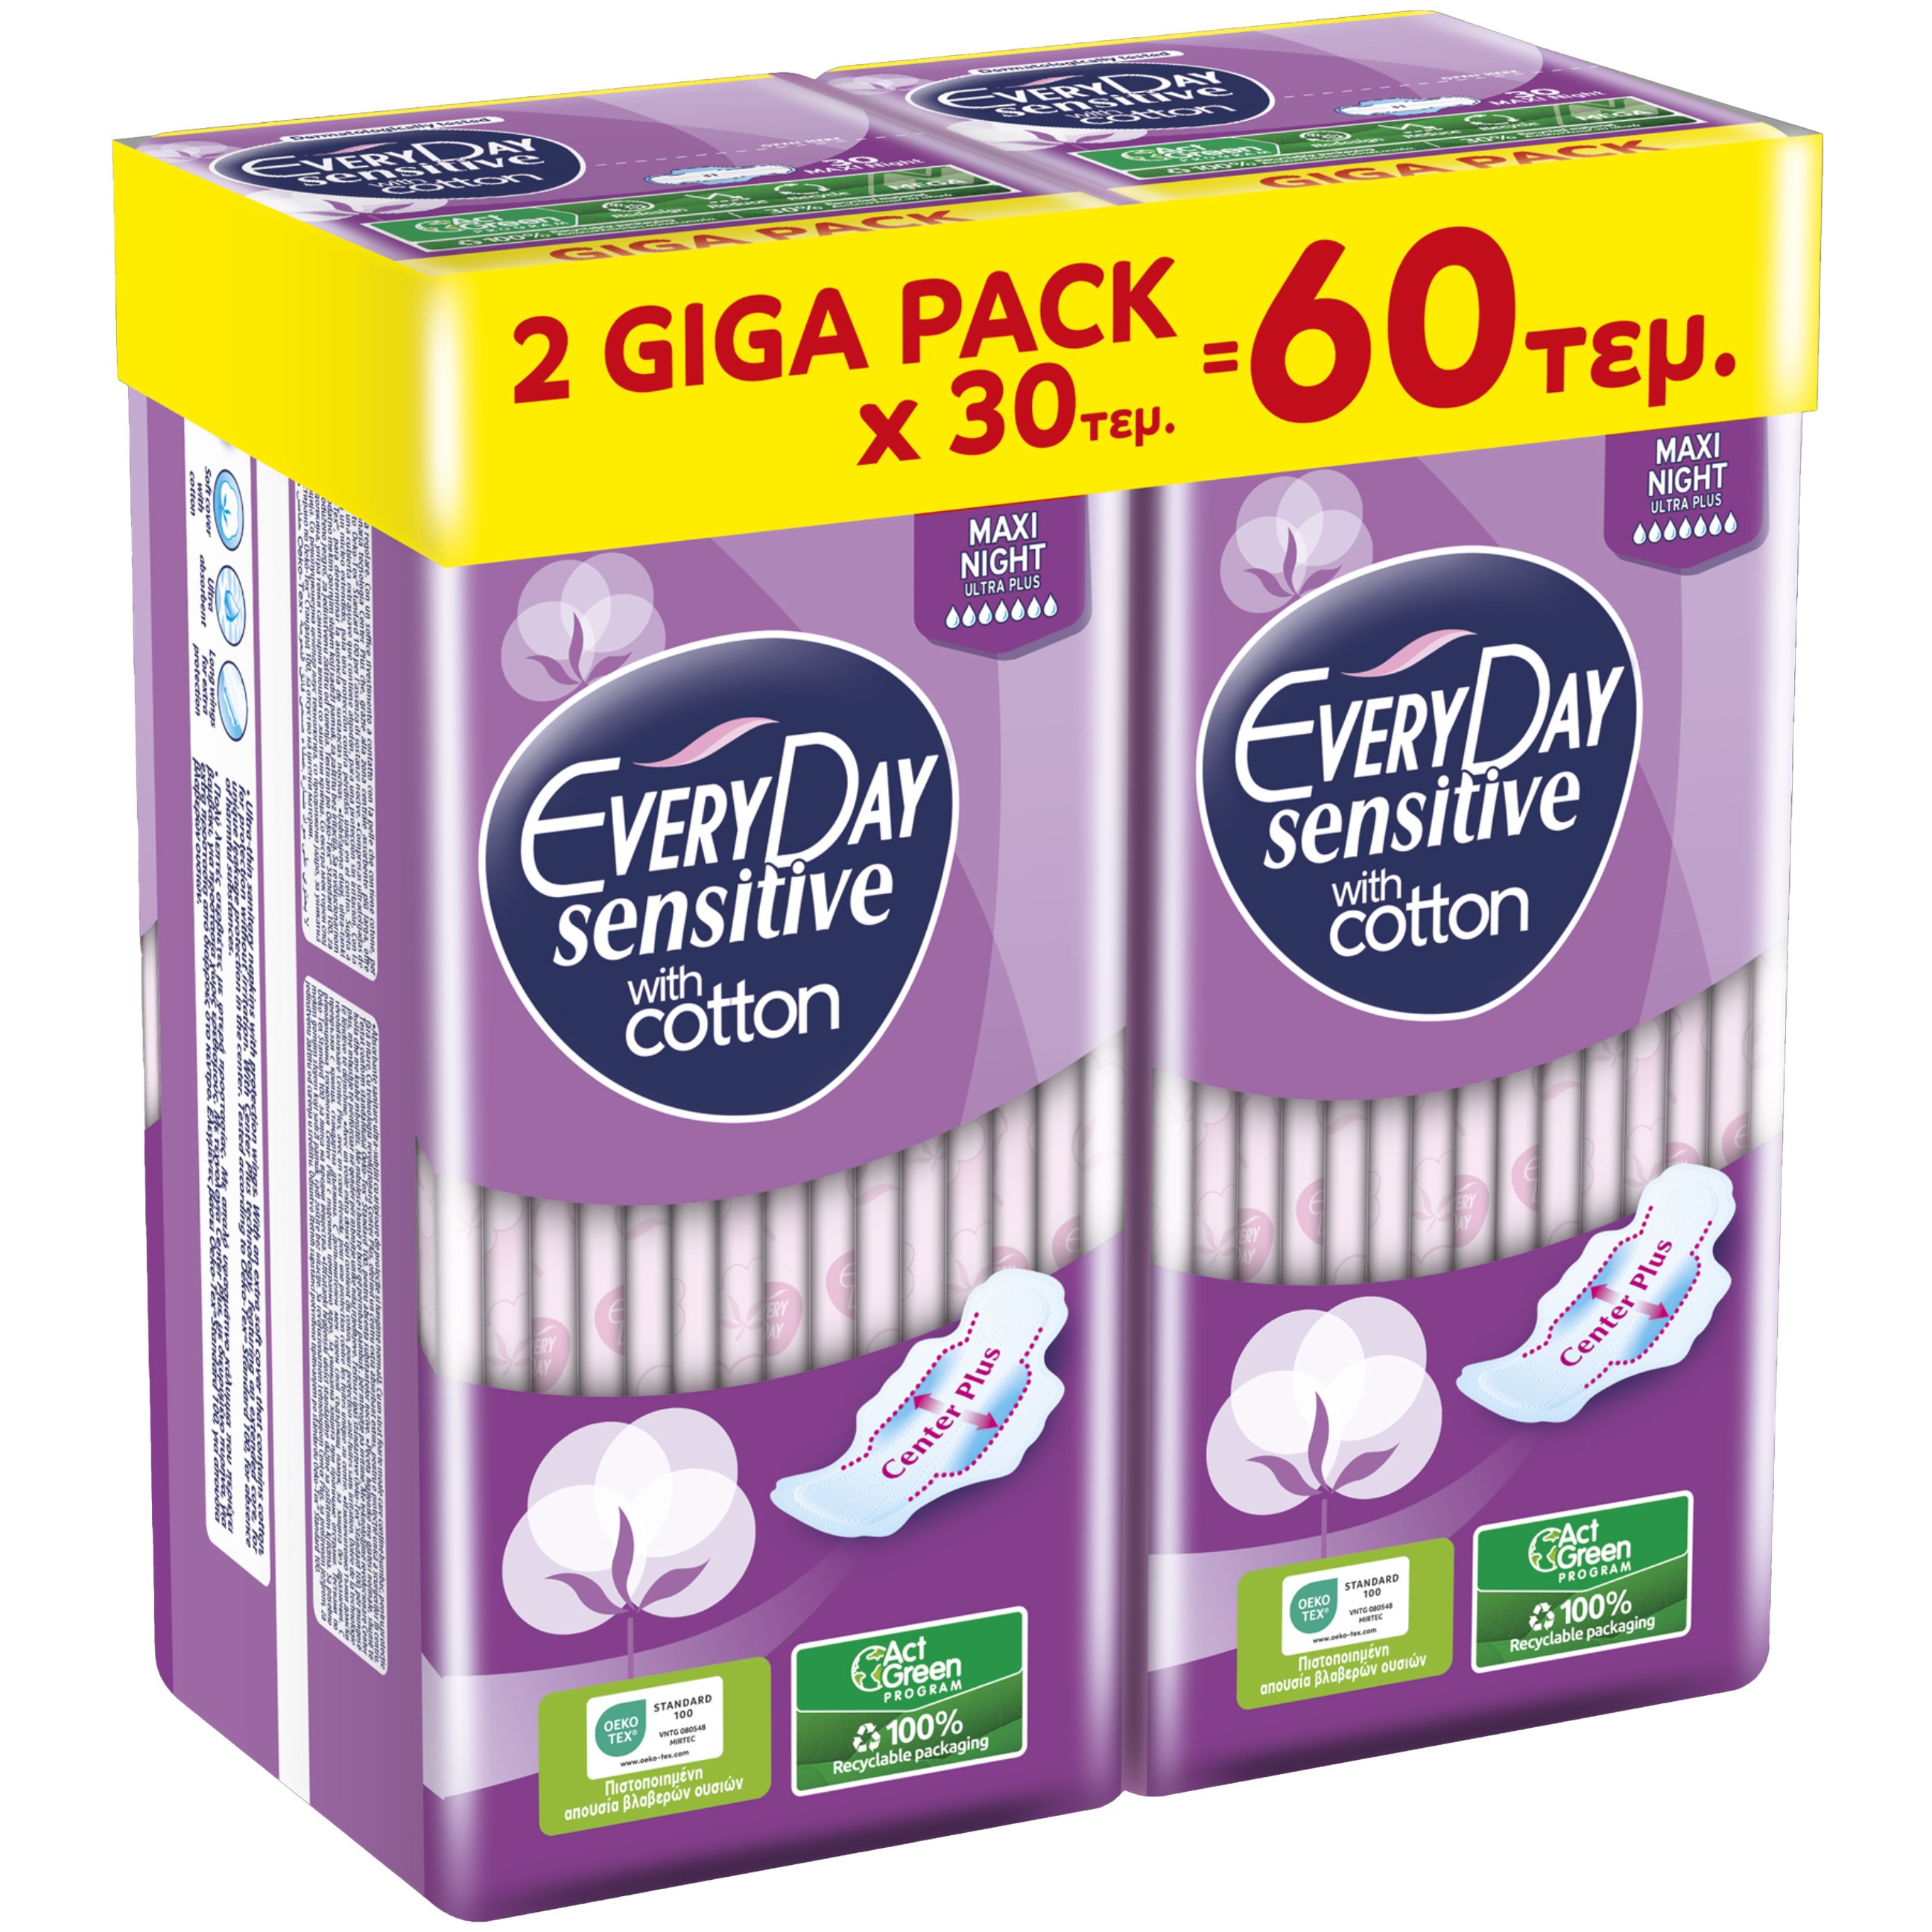 Σετ Every Day Sensitive with Cotton Maxi Night Ultra Plus Giga Pack Λεπτές Σερβιέτες Μεγάλου Μήκους με Φτερά Κατάλληλες για τη Νύχτα ή για Περιπτώσεις Μεγάλης Ροής 60 Τεμάχια (2x30 Τεμάχια)